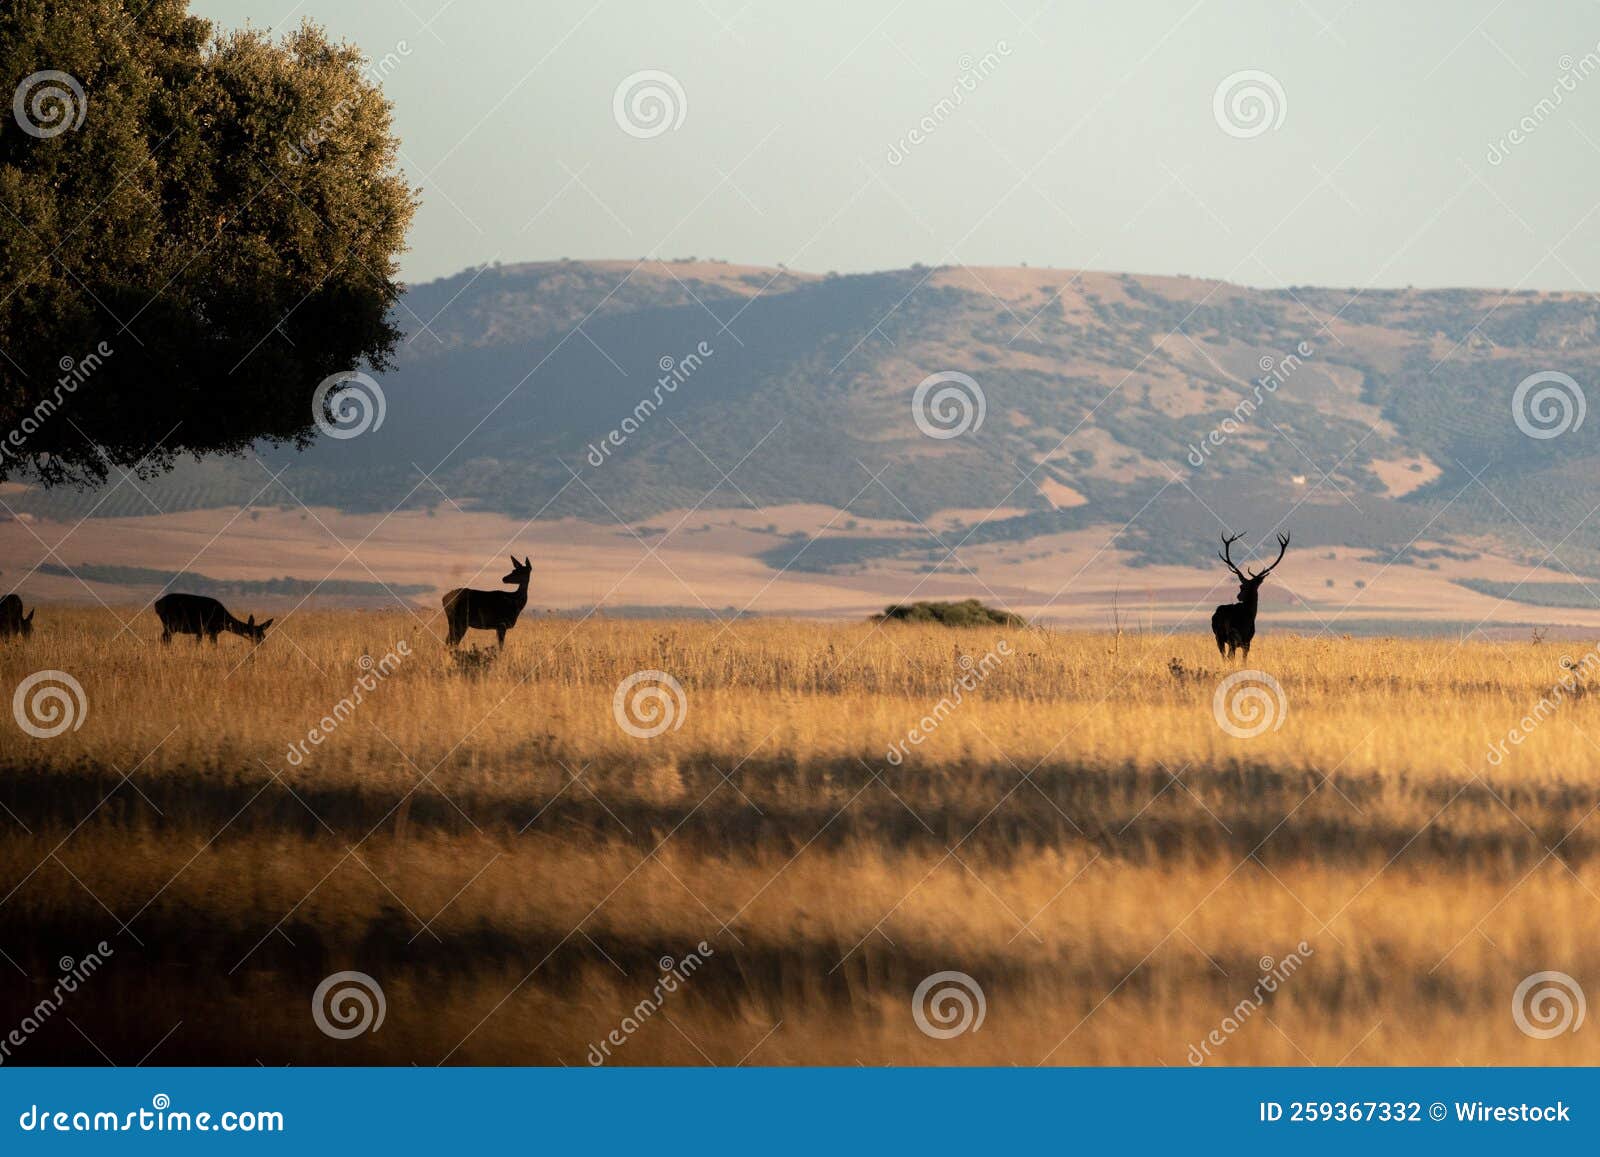 herd of deer on the field of cabaneros national park in montes de toledo, spain